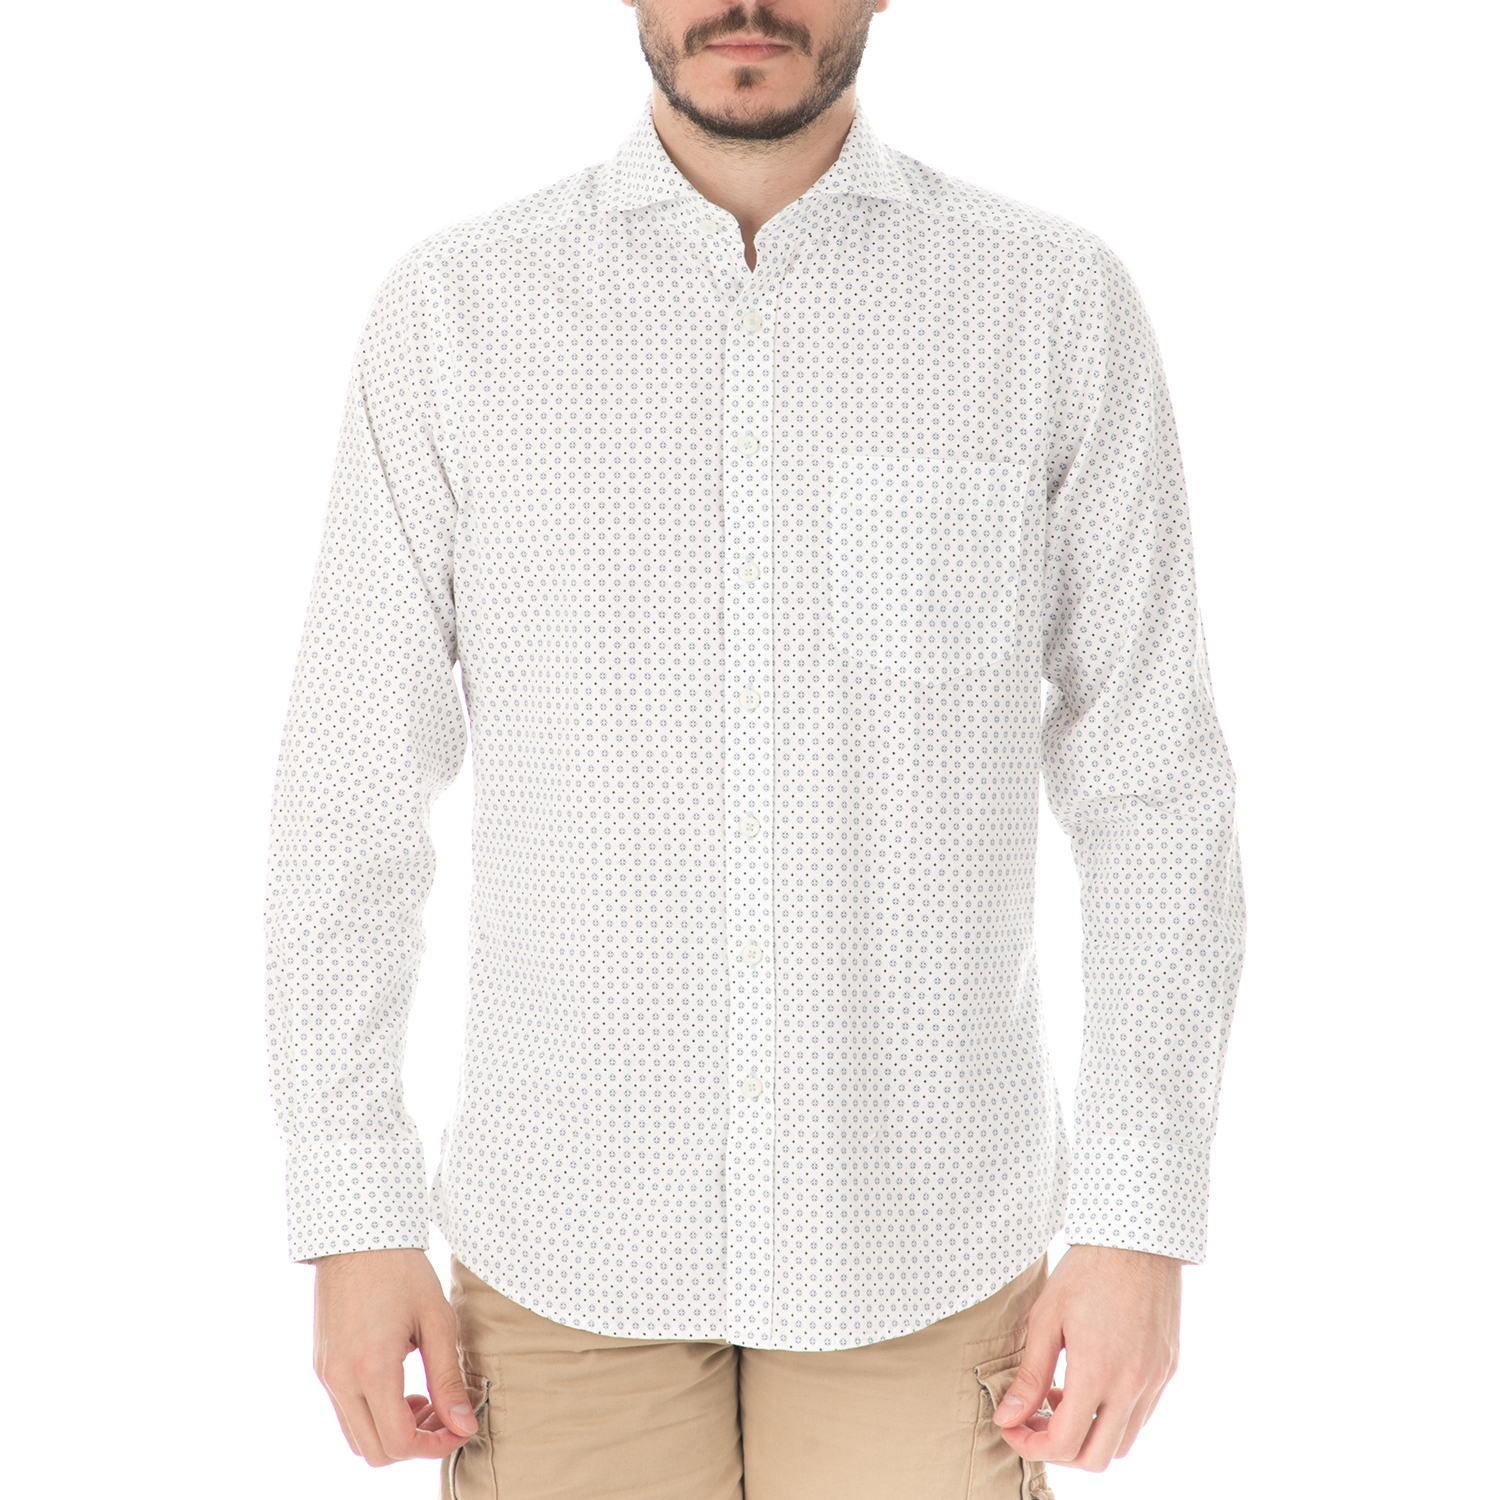 Ανδρικά/Ρούχα/Πουκάμισα/Μακρυμάνικα HAMPTONS - Ανδρικό μακρυμάνικο πουκάμισο HAMPTONS MICRODESIGN λευκό